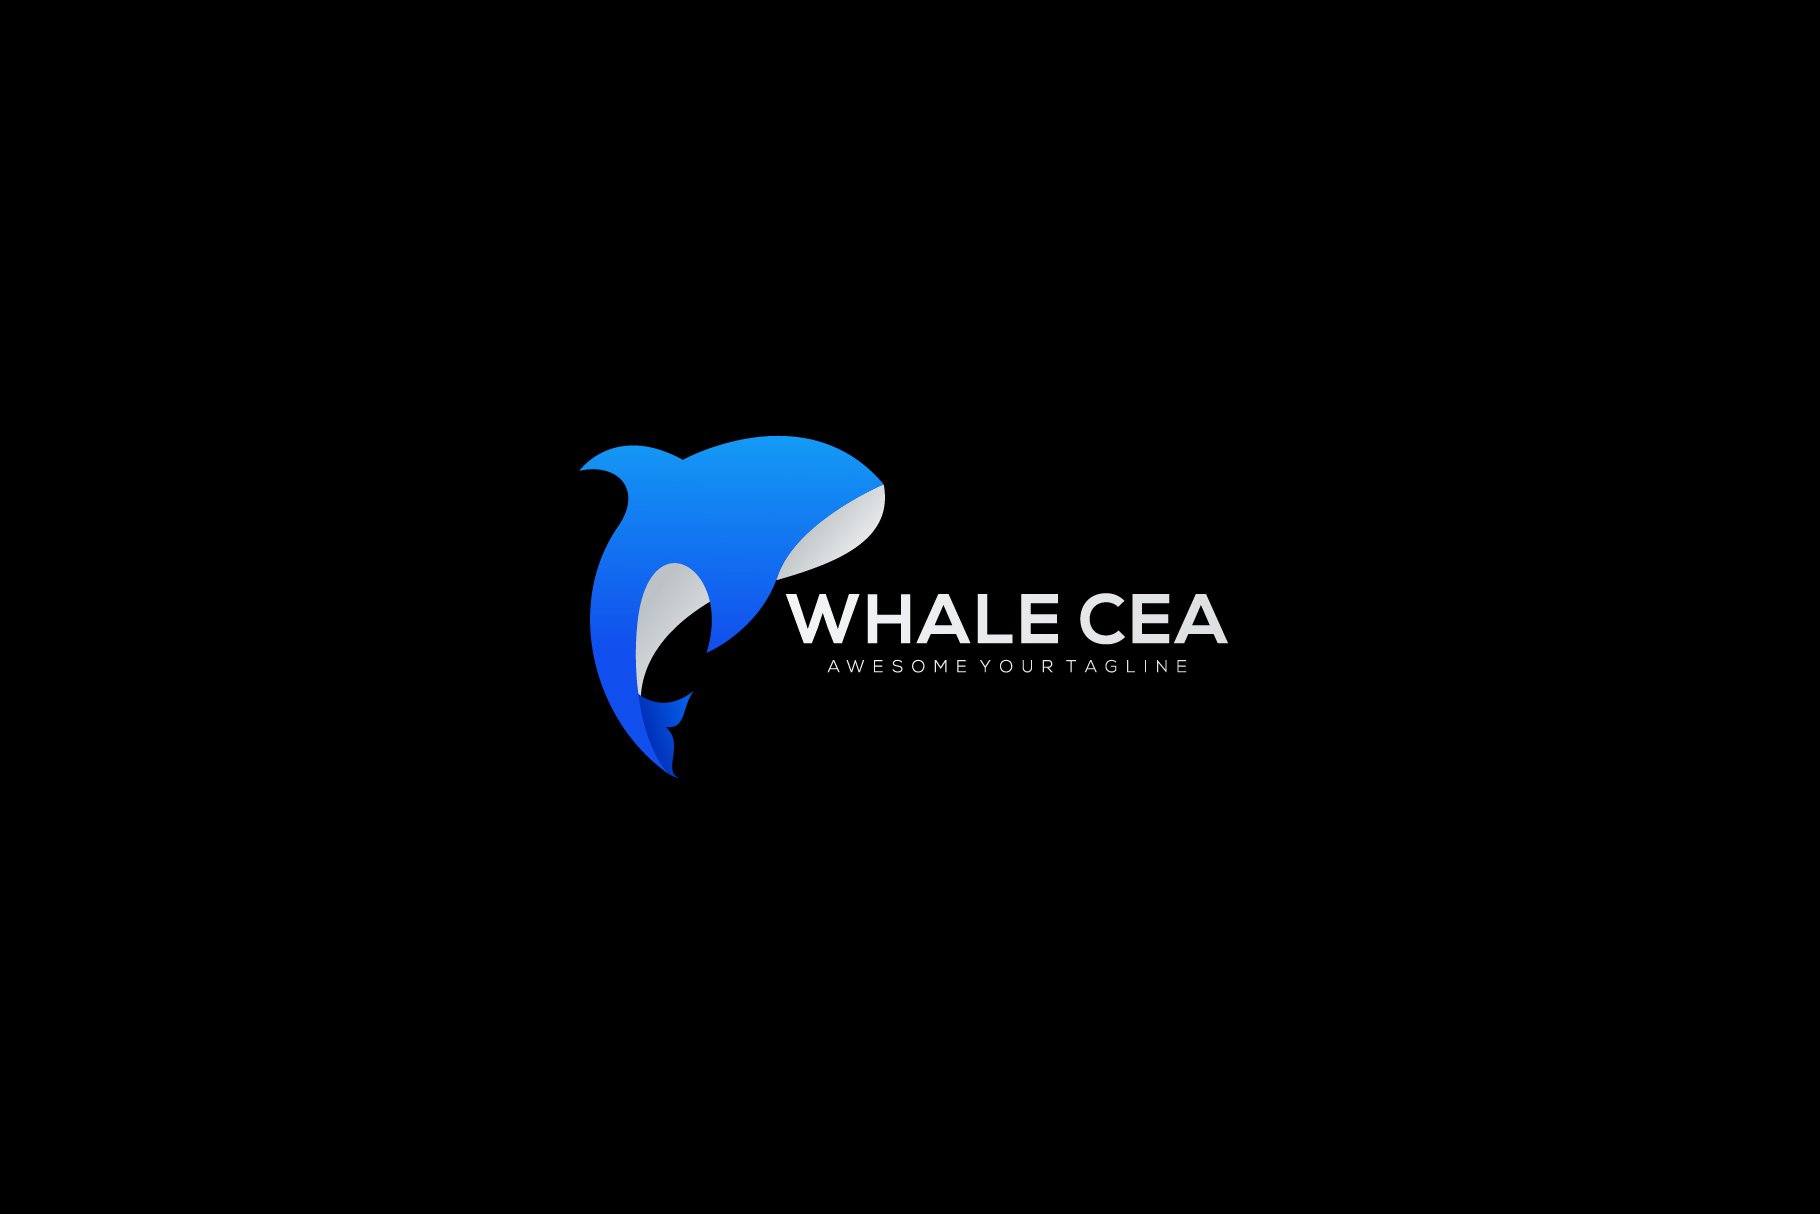 blue whale sea modern logo vector de cover image.